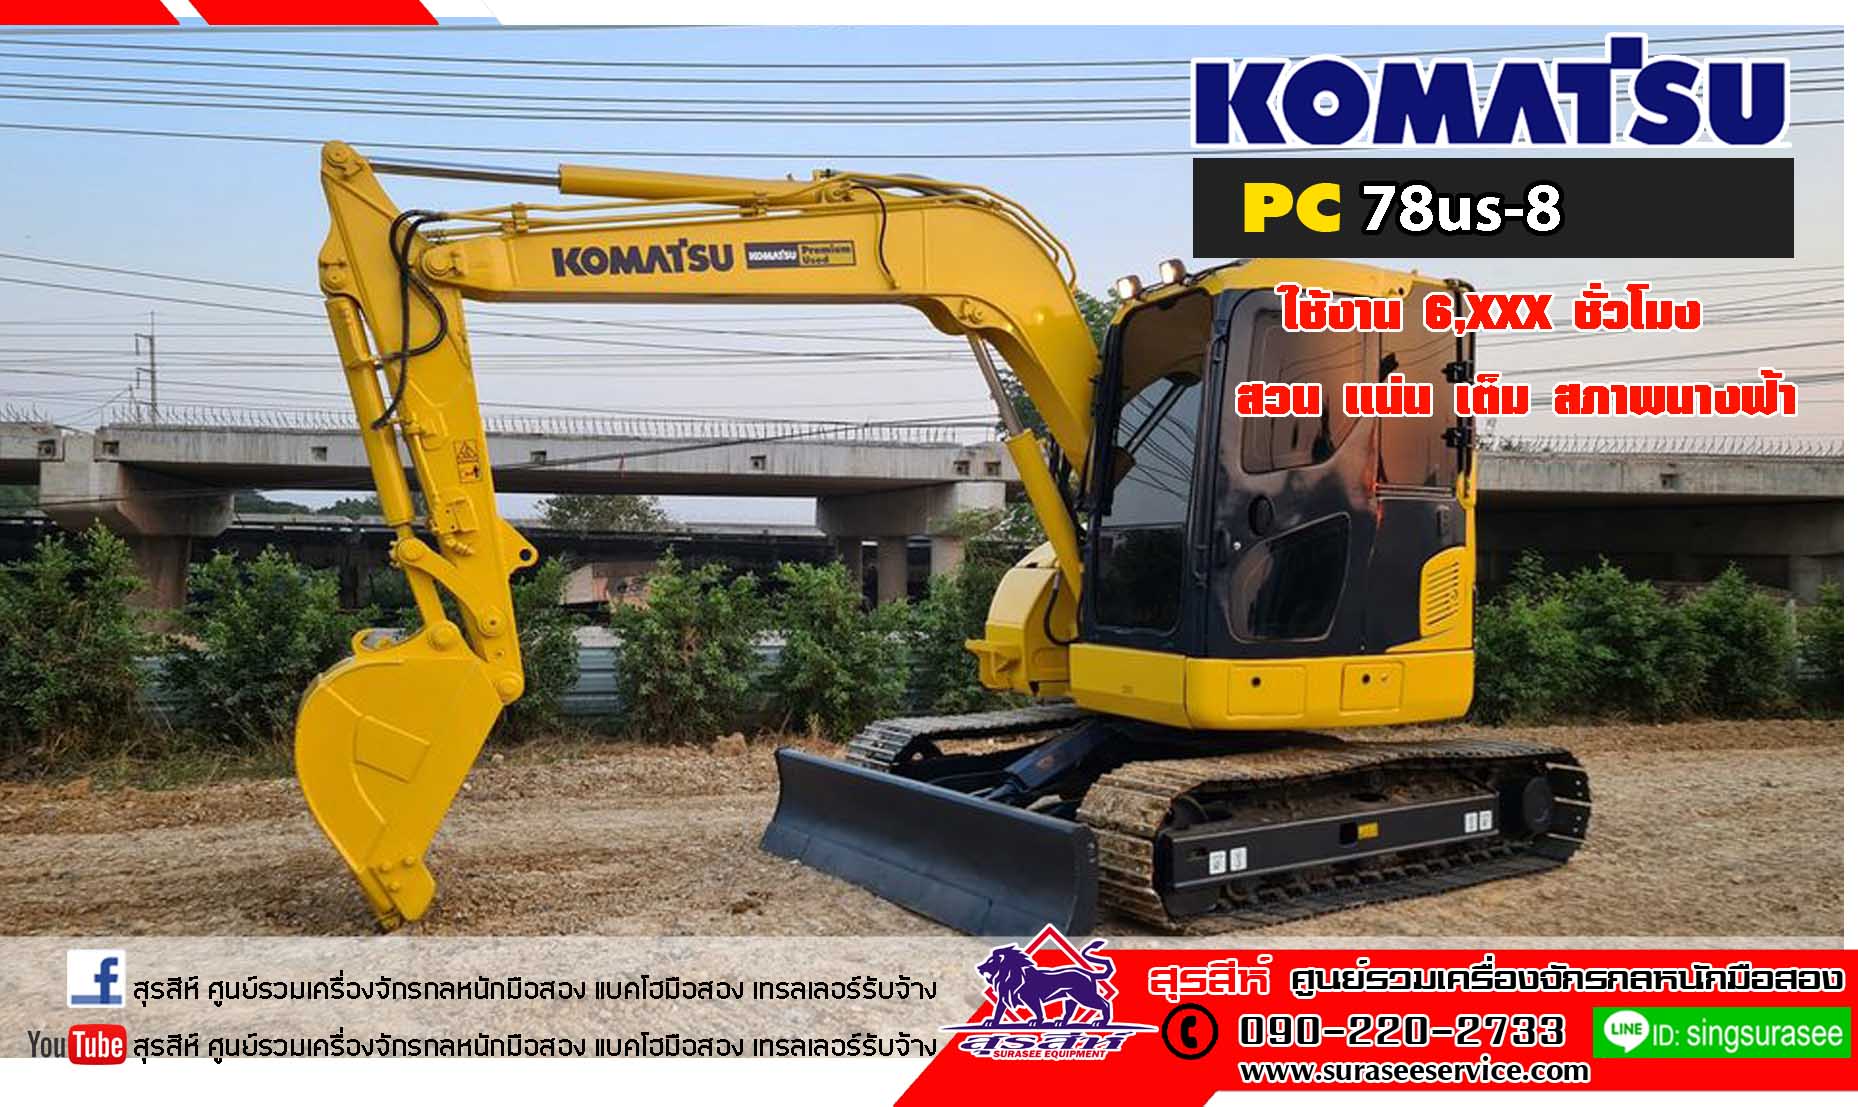 KOMATSU PC78us-8 มือสอง สวบๆๆ